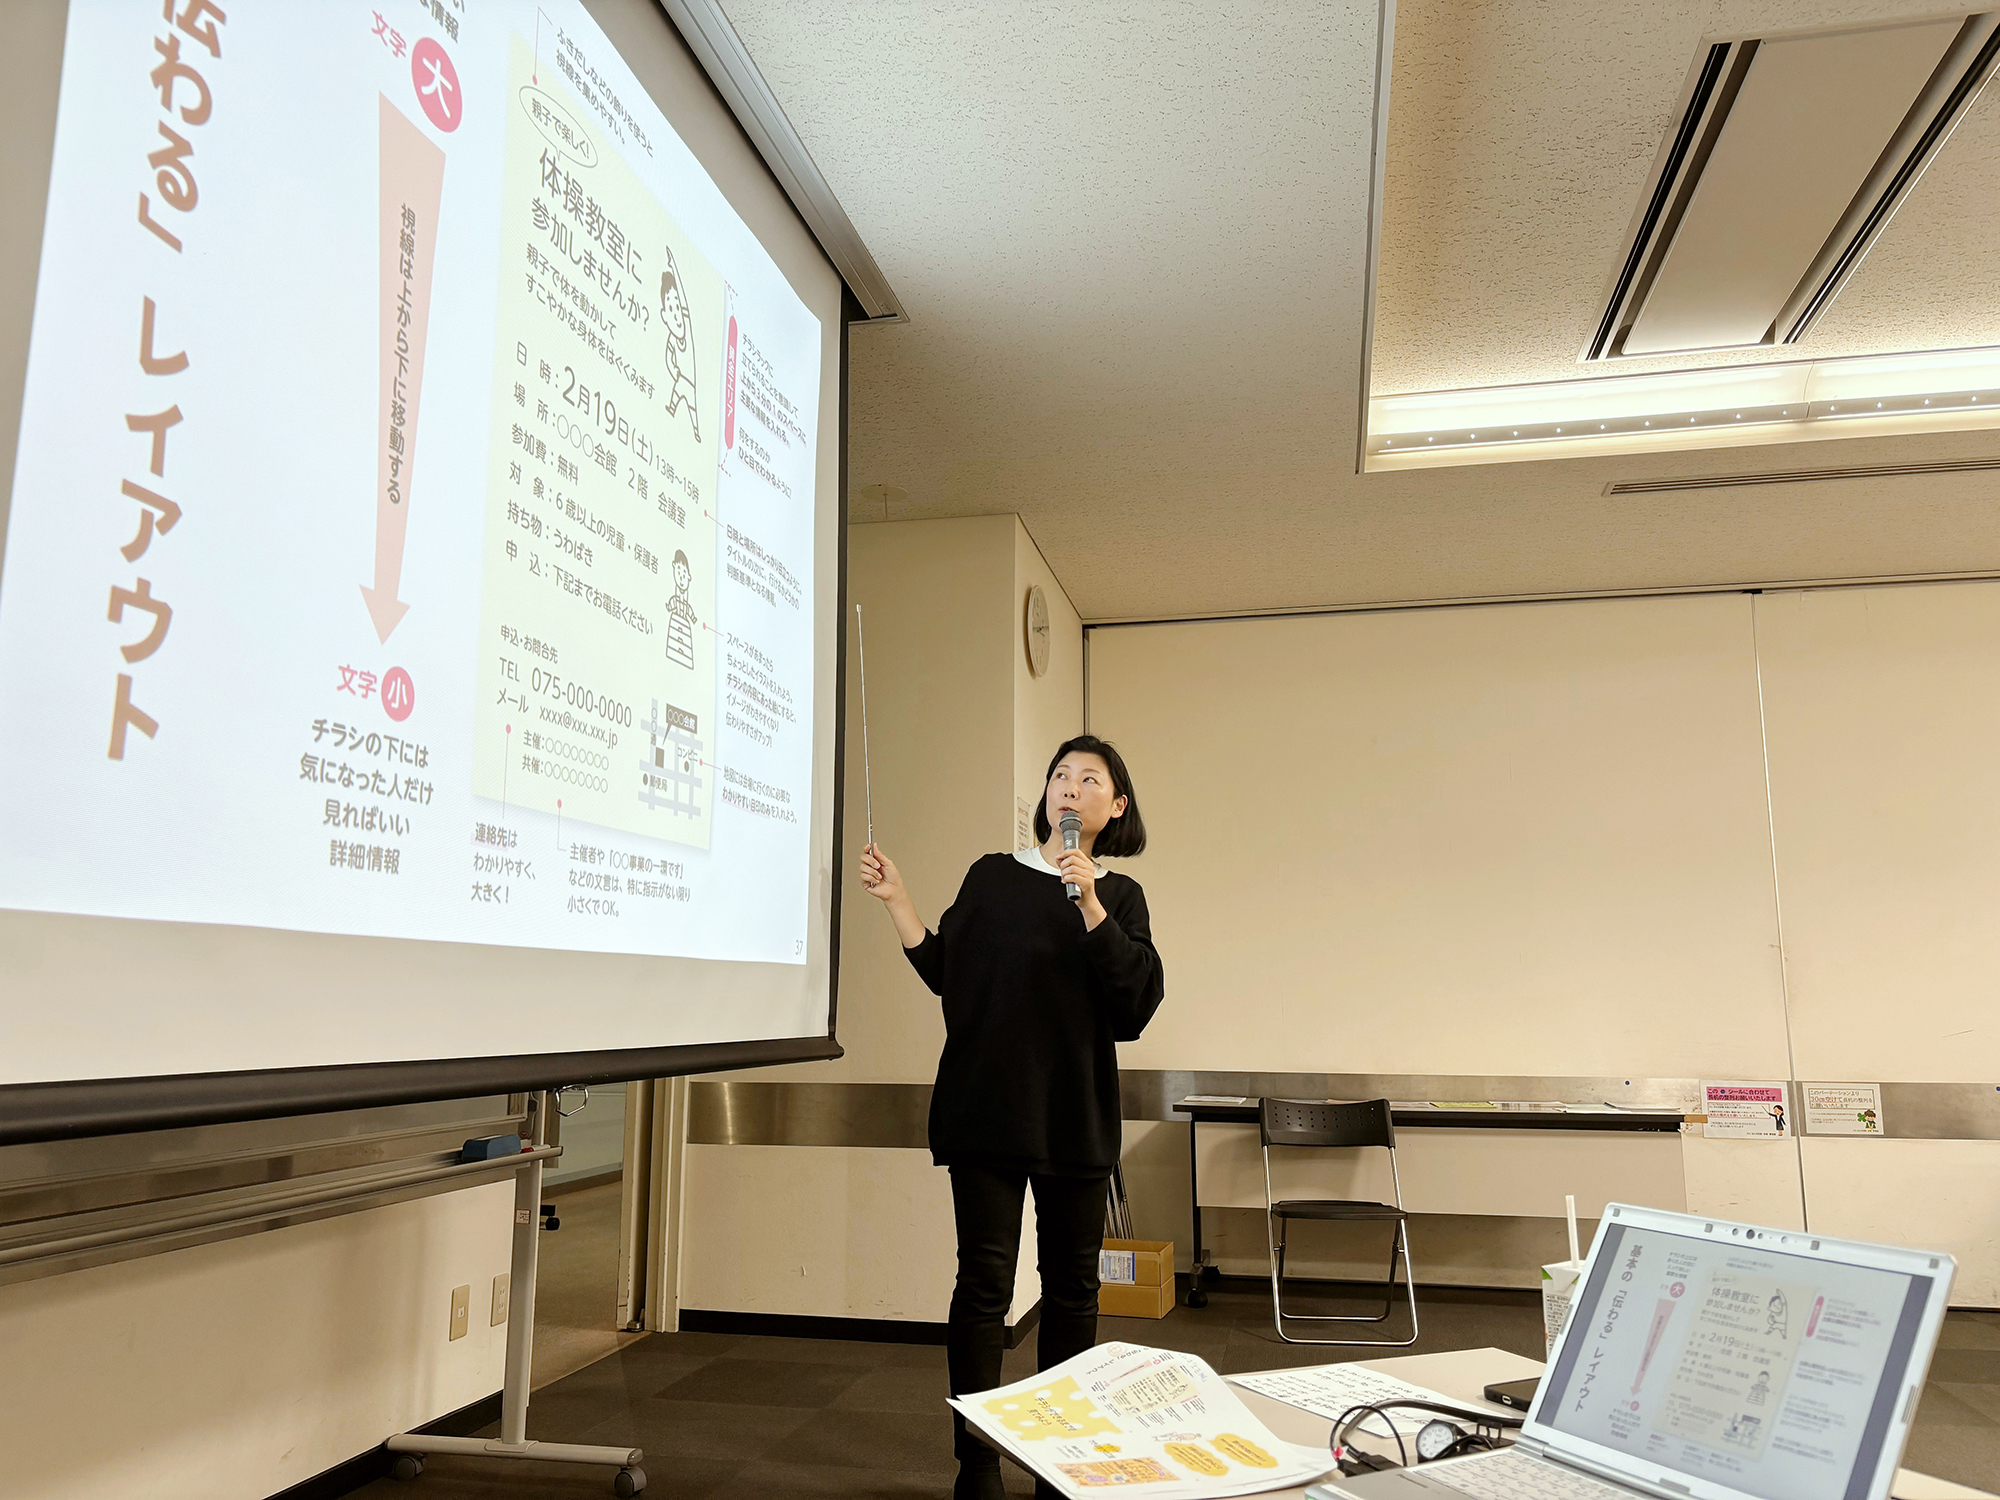 京都市福祉ボランティアセンター様「今より伝わるチラシの作り方」講座で山中美知世が講師を担当しました。